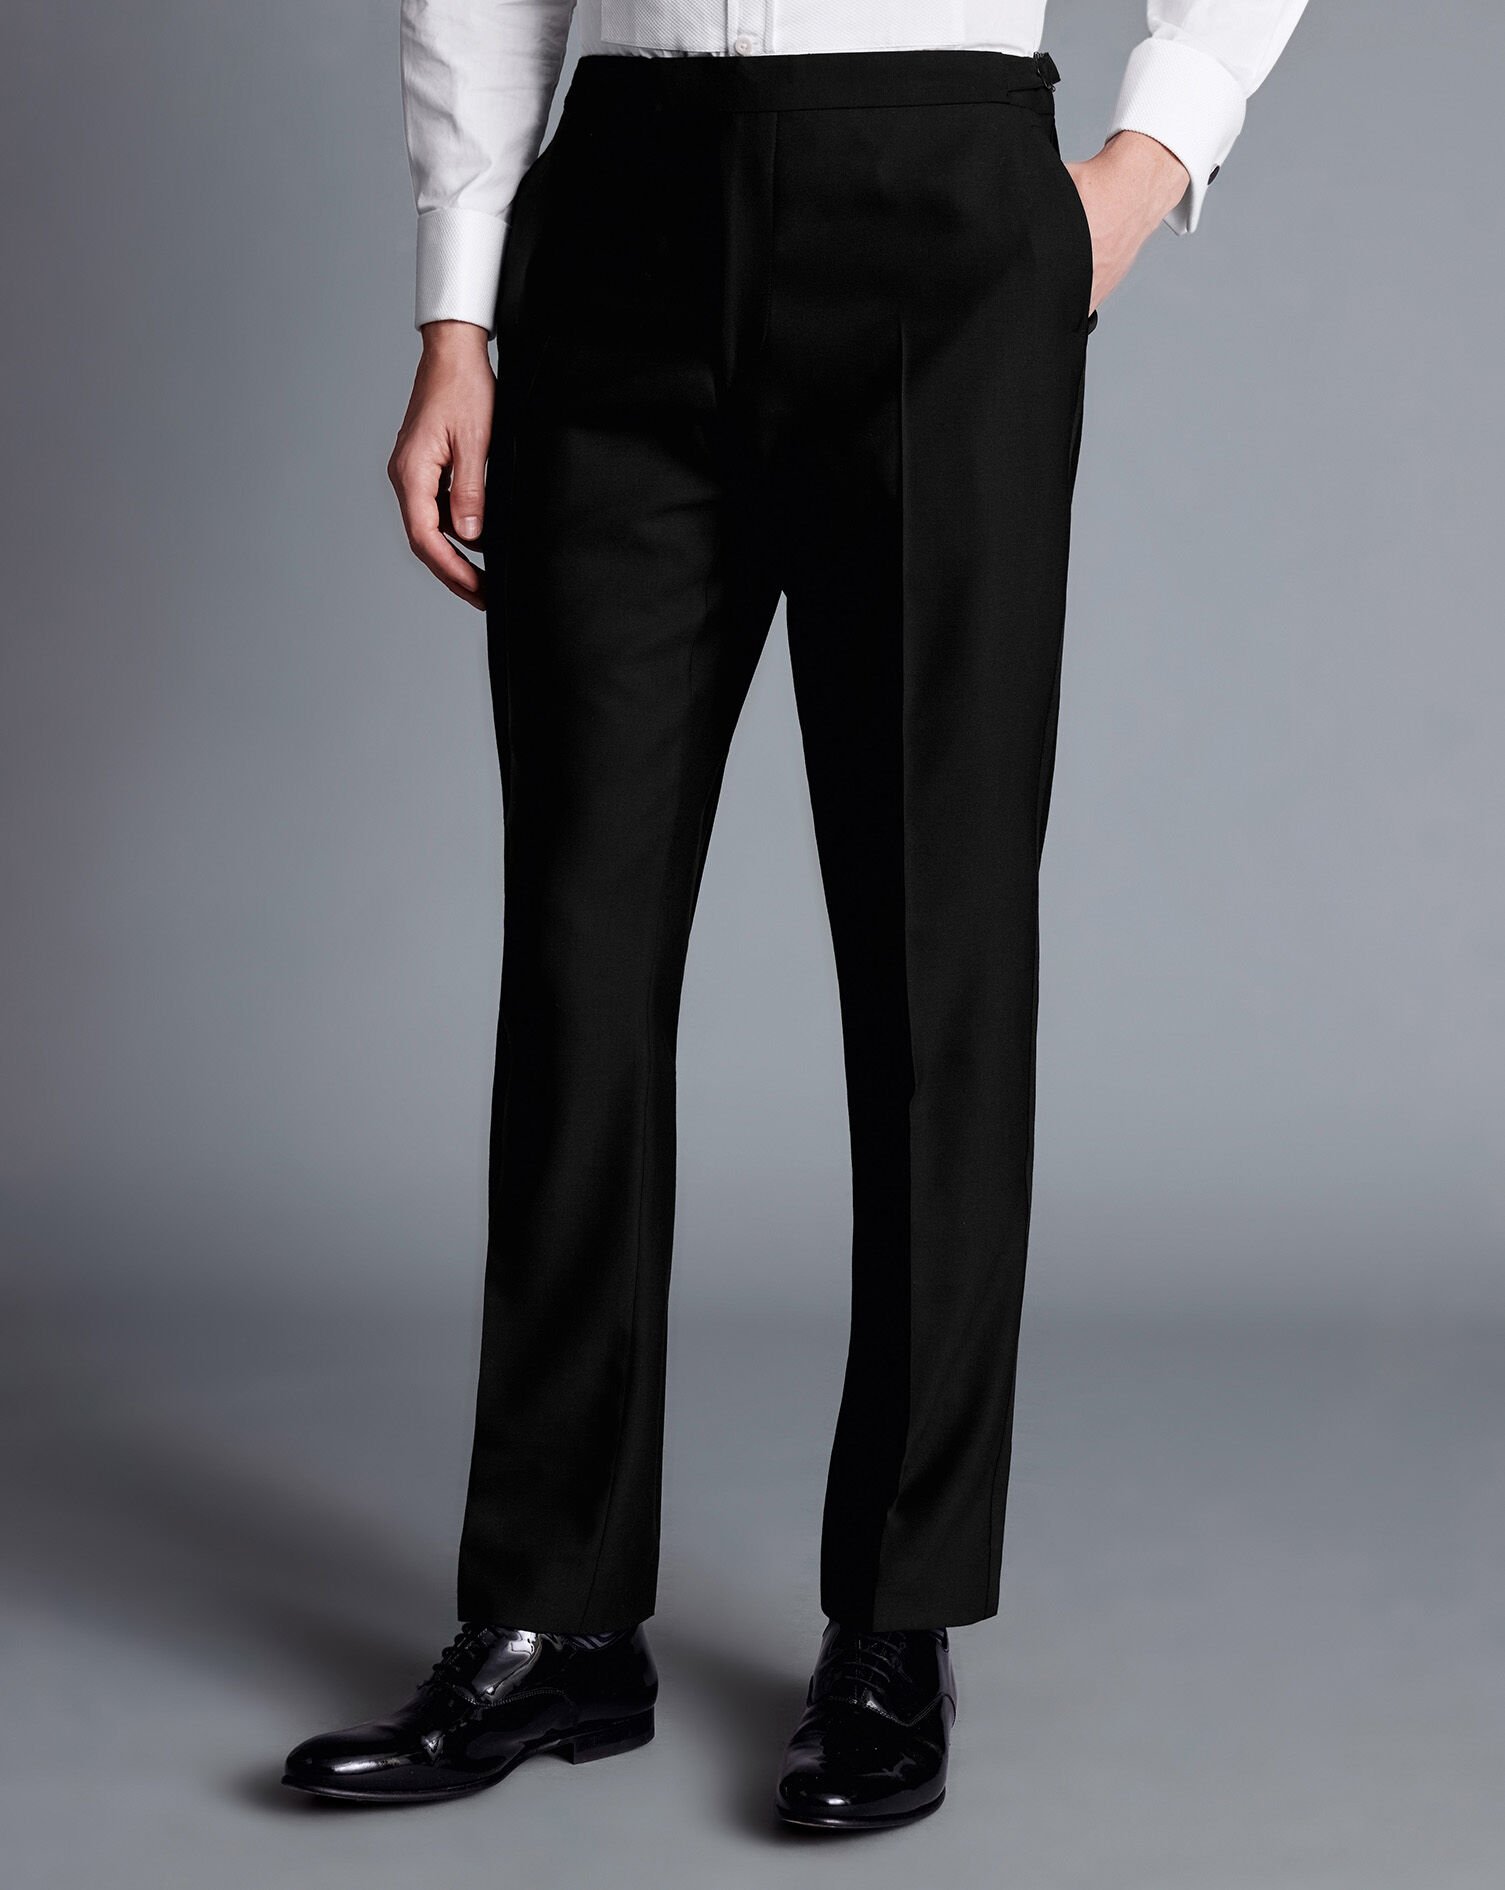 Women's Black Flat Front Tuxedo Pants - LionsDeal